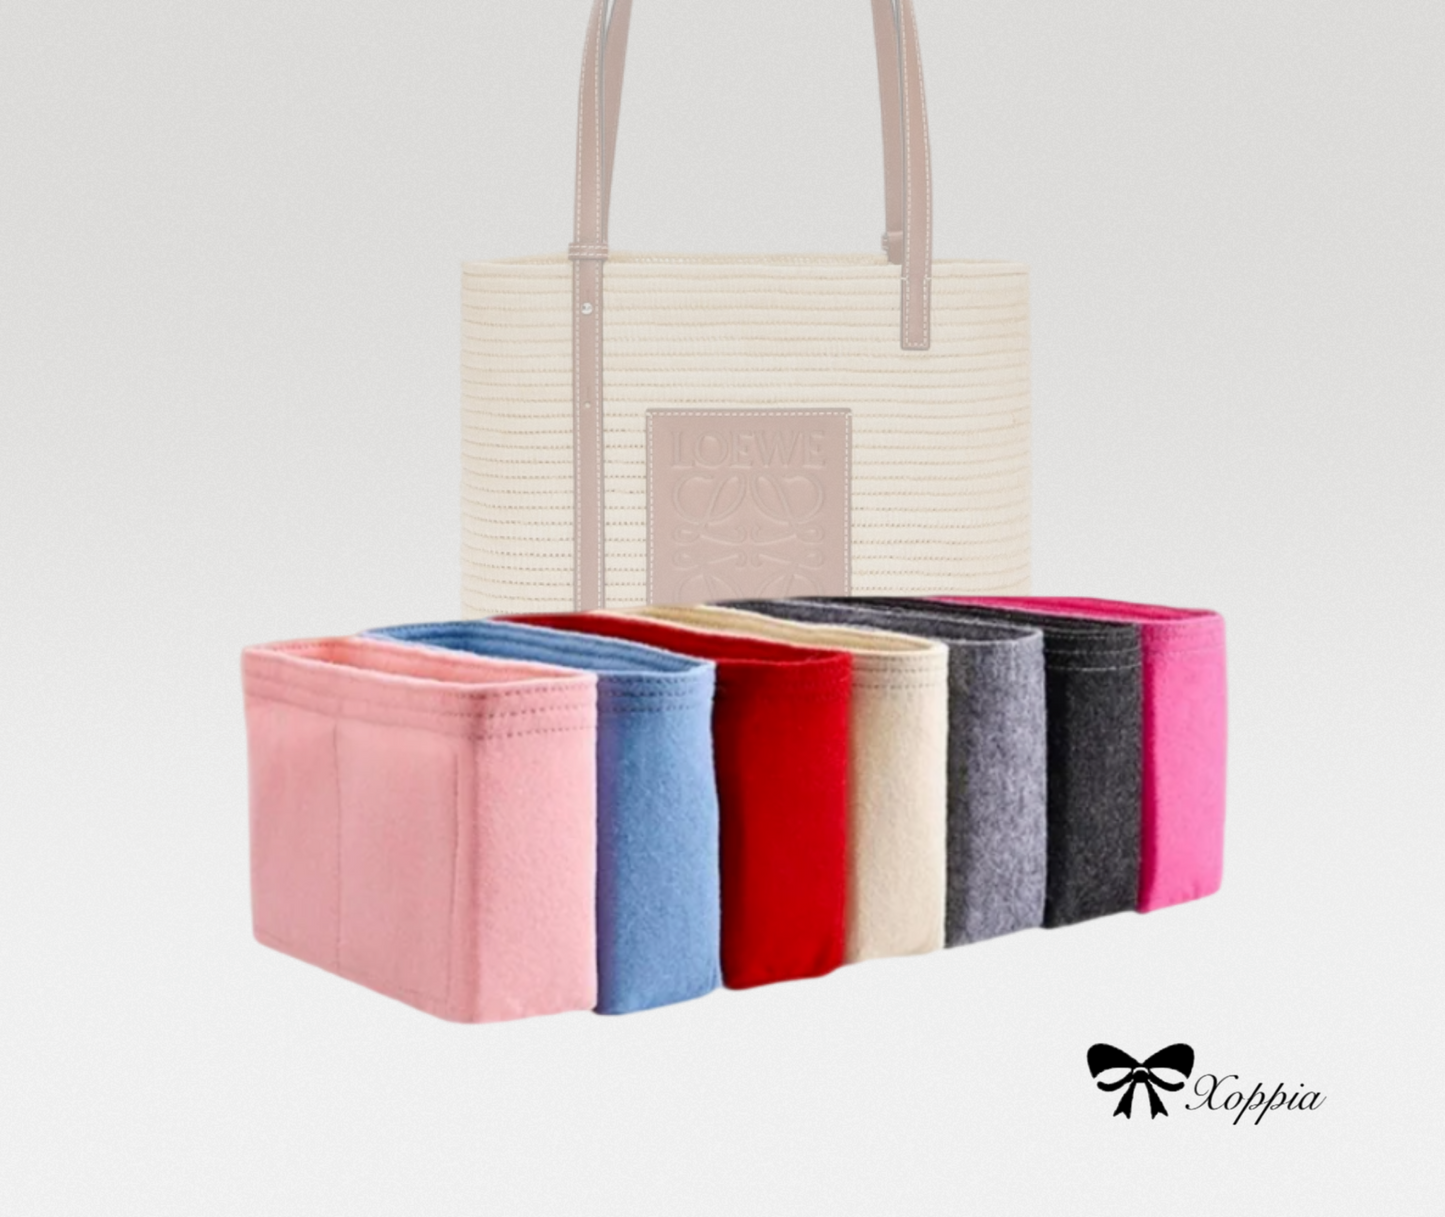 Bag Organizer For Small Square Basket bag | Bag Insert For Tote Bag | Felt Bag Organizer For Handbag Bag